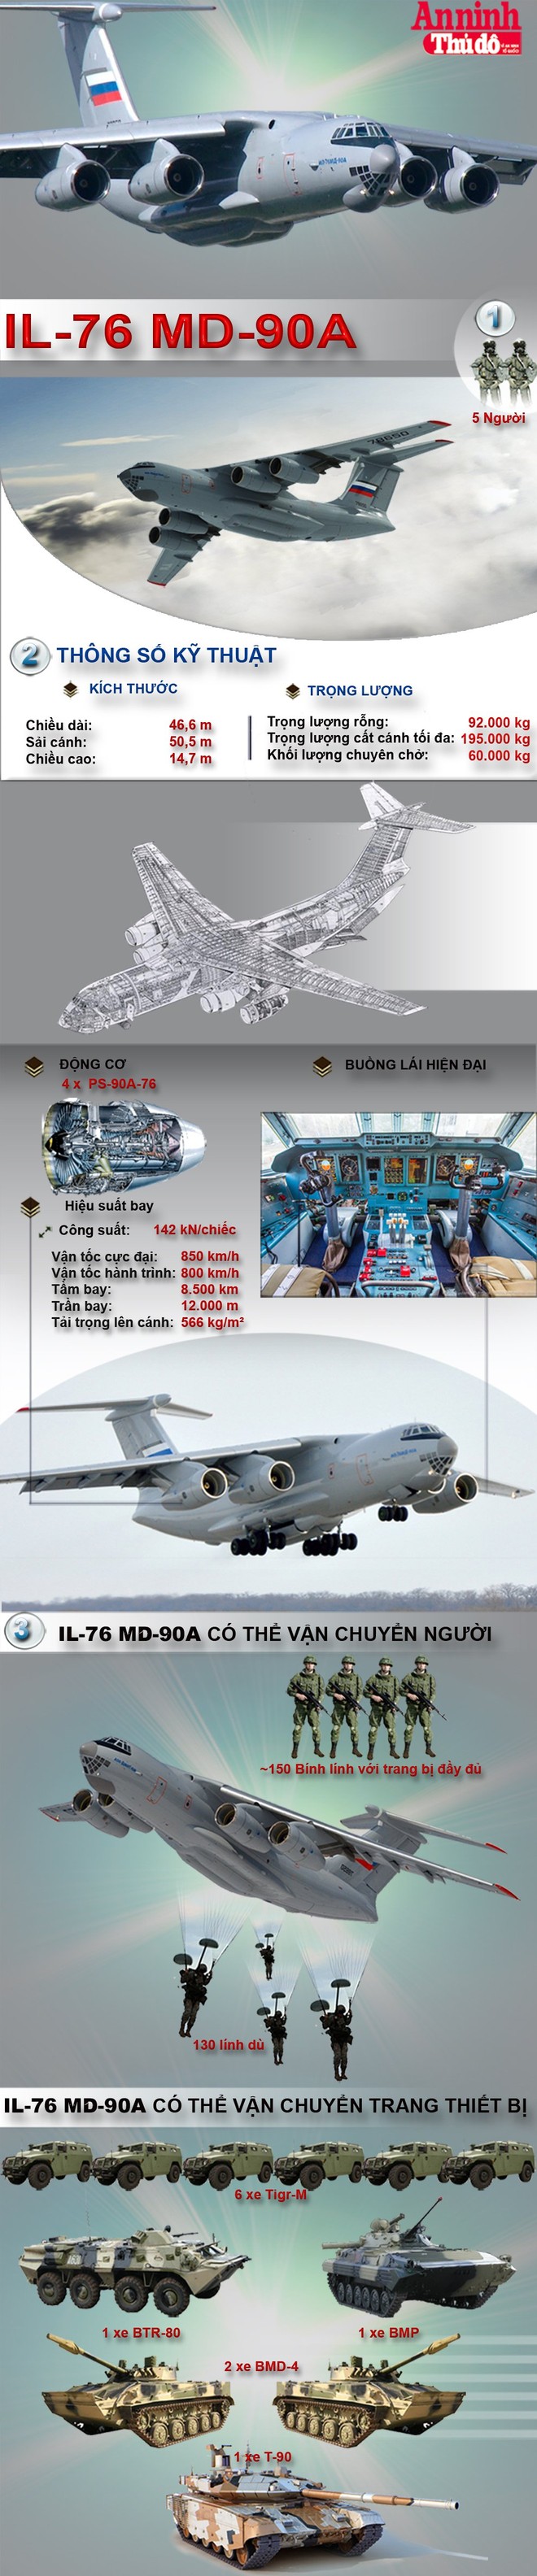 [Infographic] Nếu được trang bị, IL-76 MD-90A là át chủ bài đổ bộ đường không Việt Nam ảnh 2